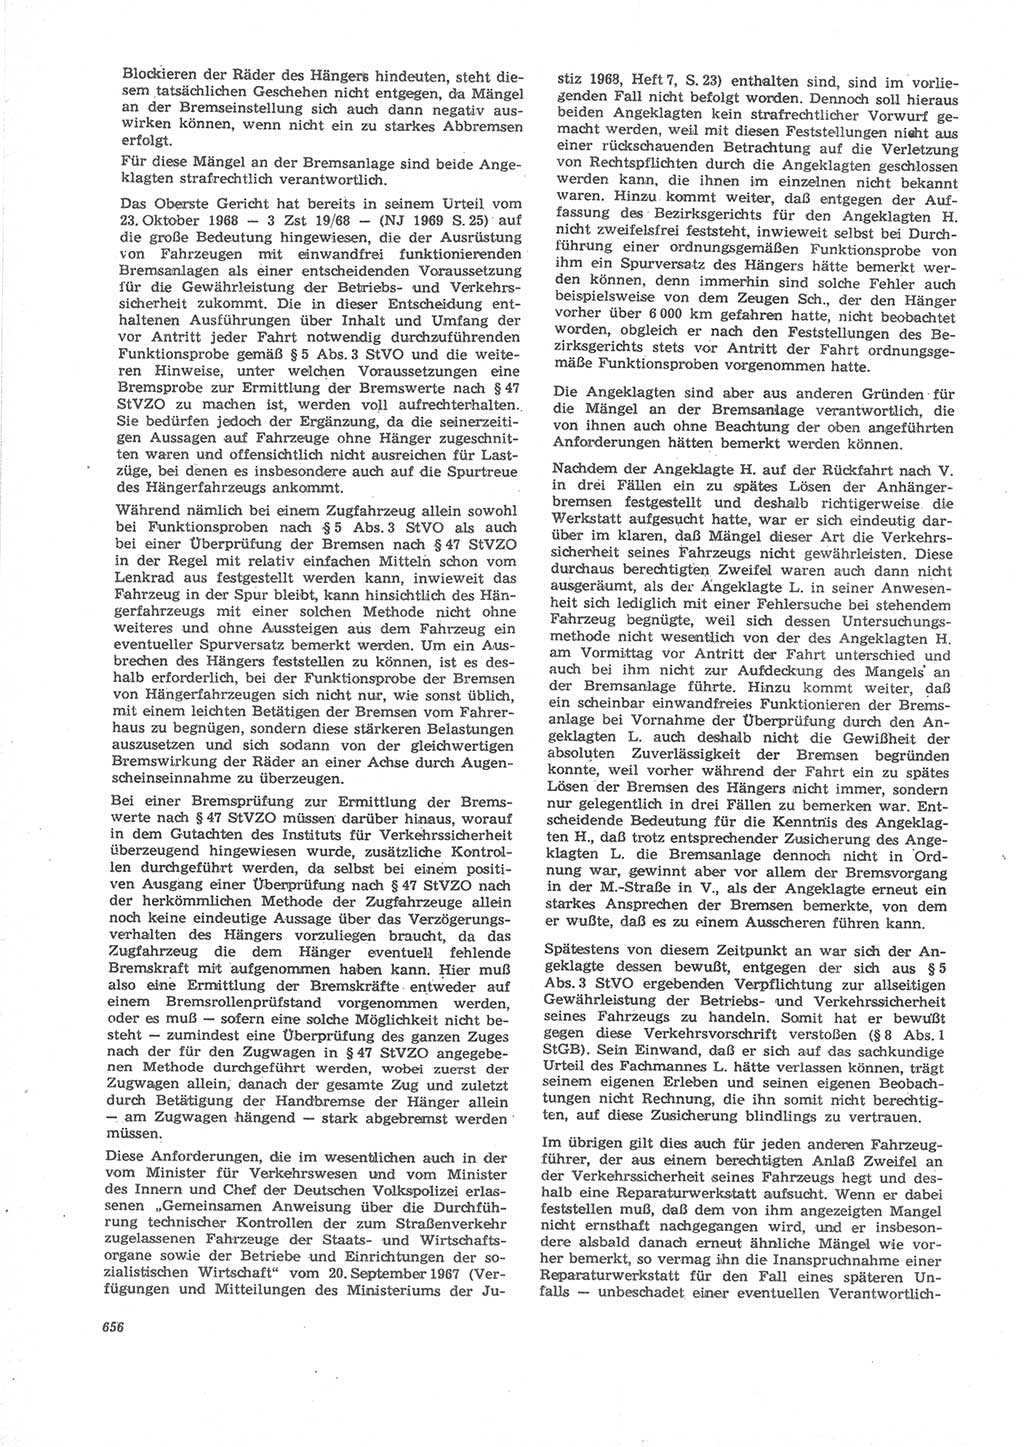 Neue Justiz (NJ), Zeitschrift für Recht und Rechtswissenschaft [Deutsche Demokratische Republik (DDR)], 24. Jahrgang 1970, Seite 656 (NJ DDR 1970, S. 656)